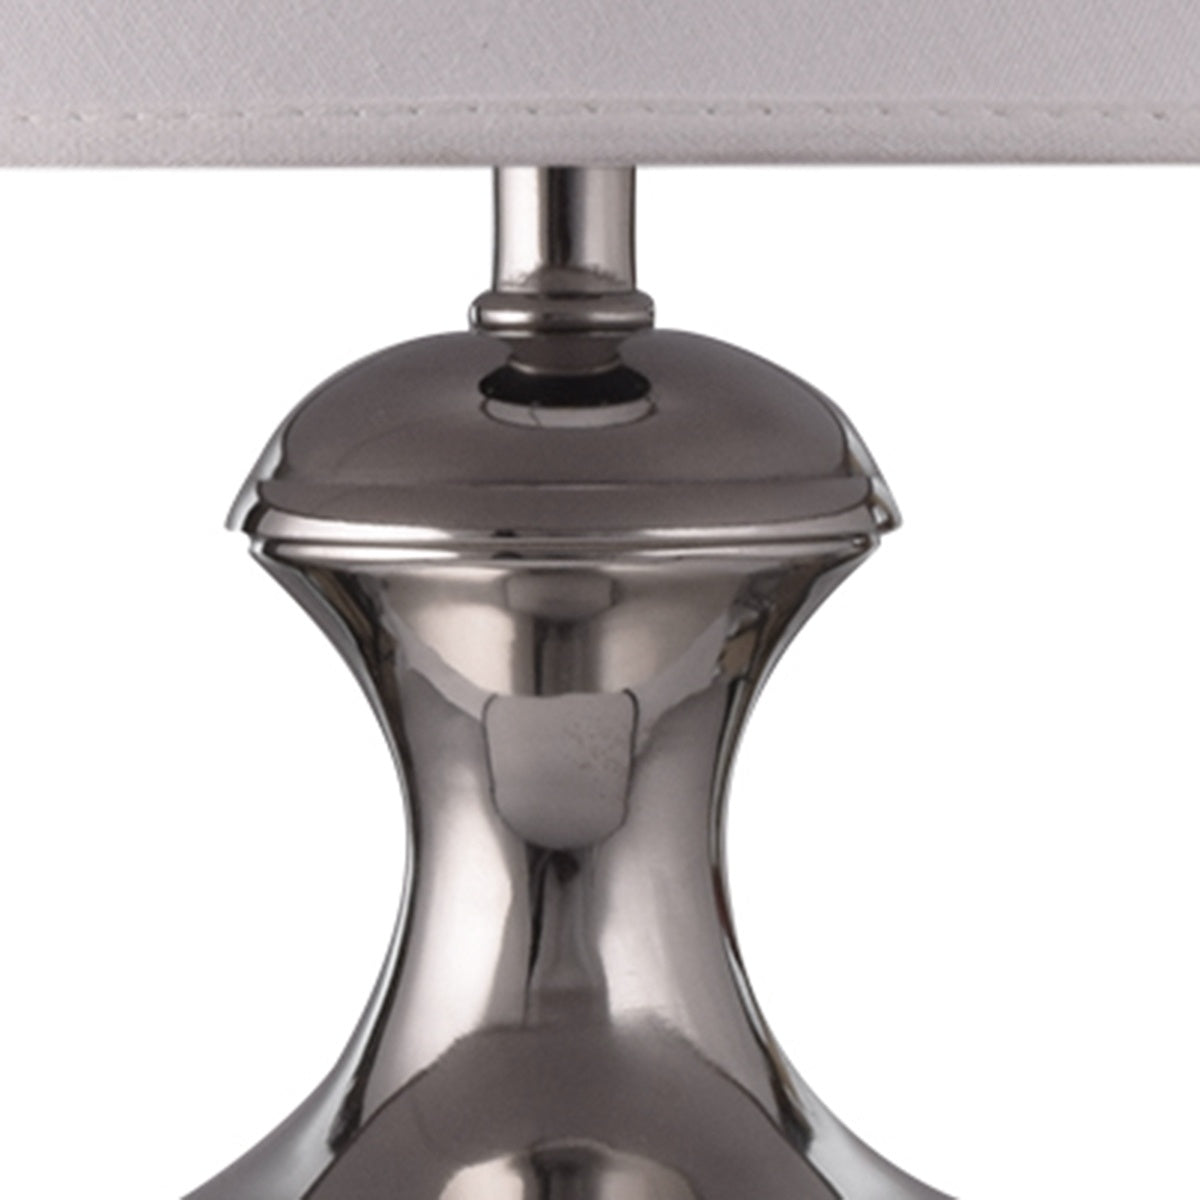 Detec Metal Table Lamp